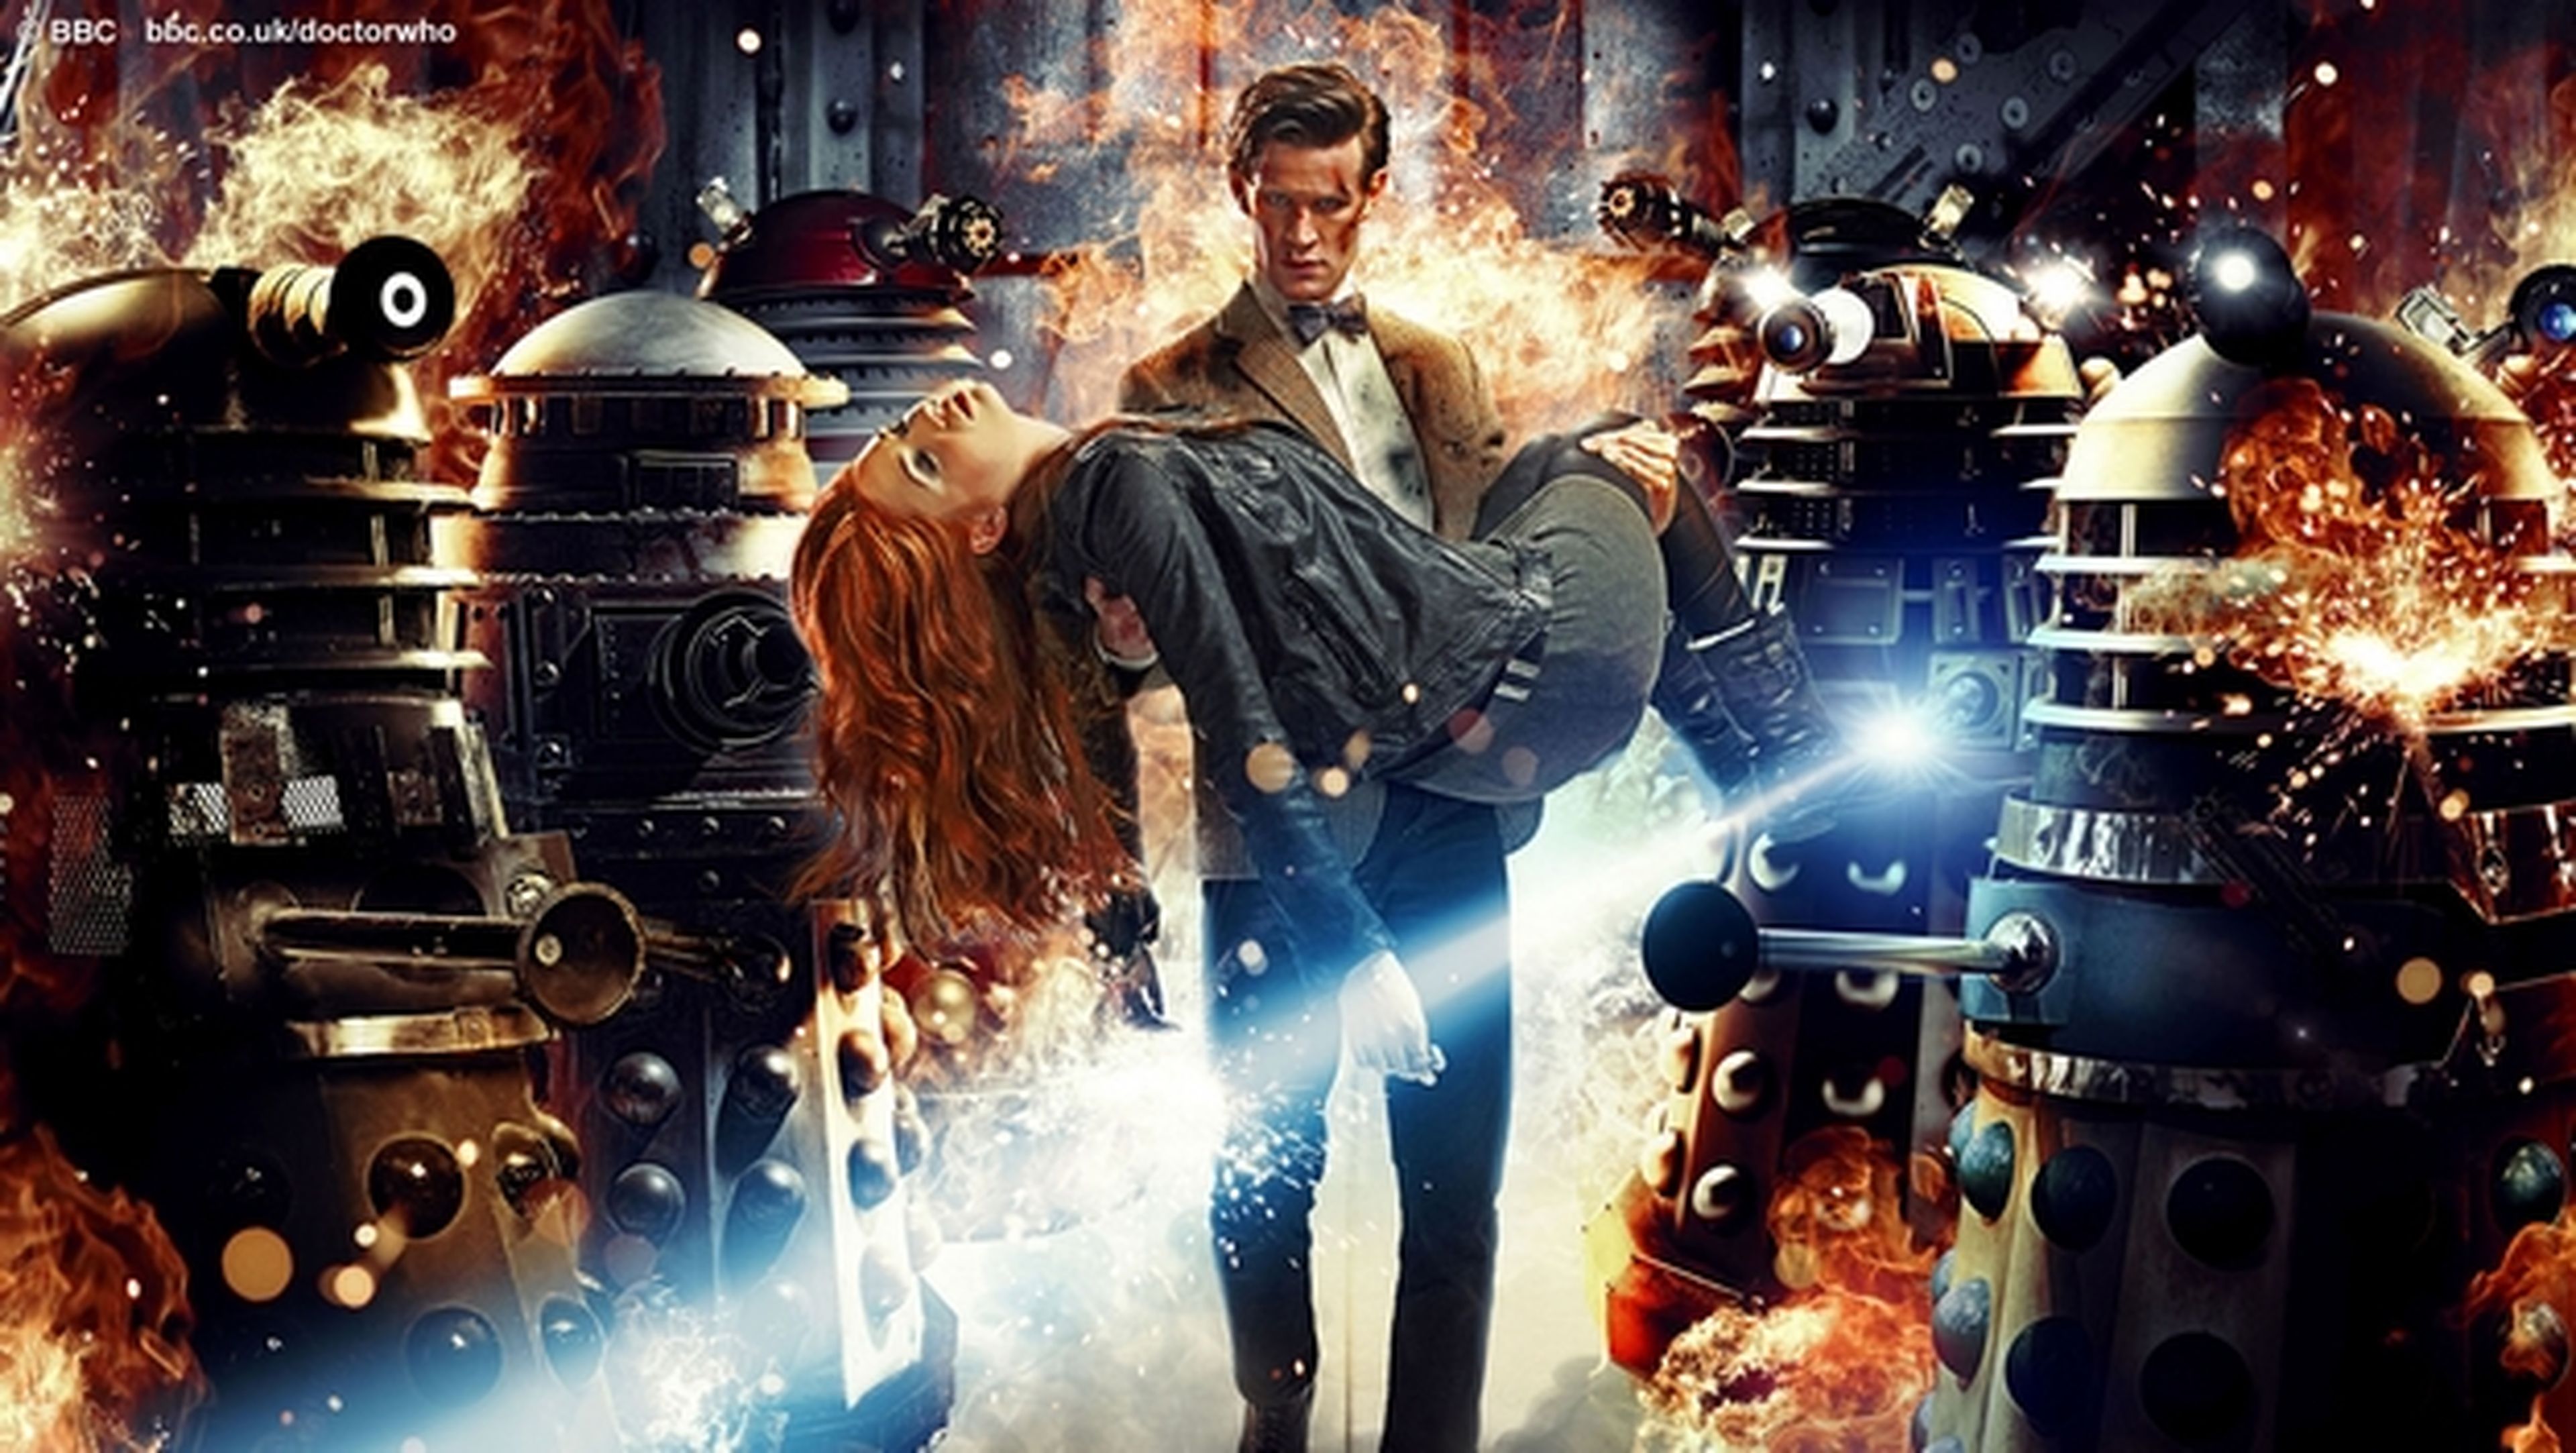 Ya puedes descargar legamente series de la BBC como Doctor Who en BitTorrent.